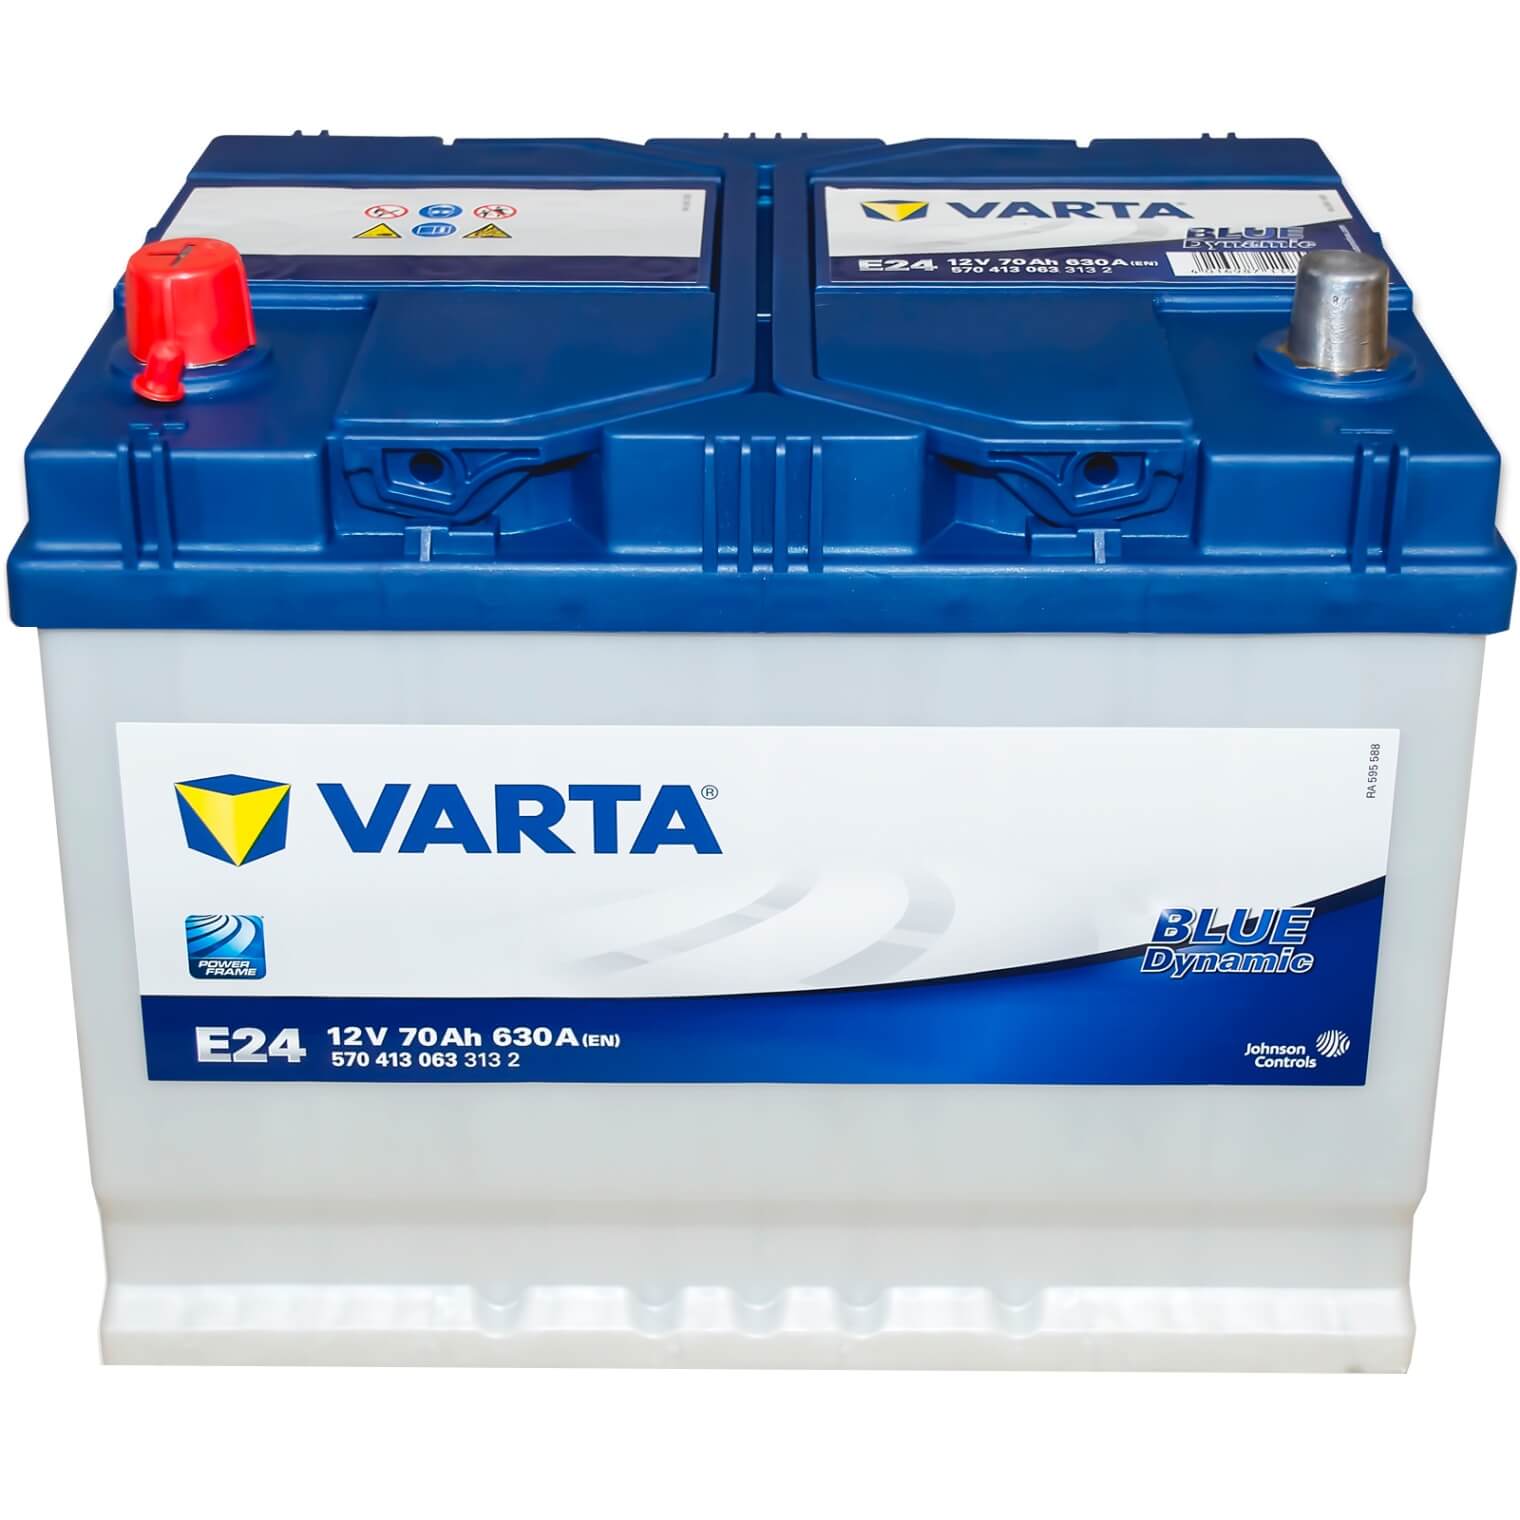 5704130633132 VARTA E24 BLUE dynamic E24 Batterie 12V 70Ah 630A B01  Batterie au plomb